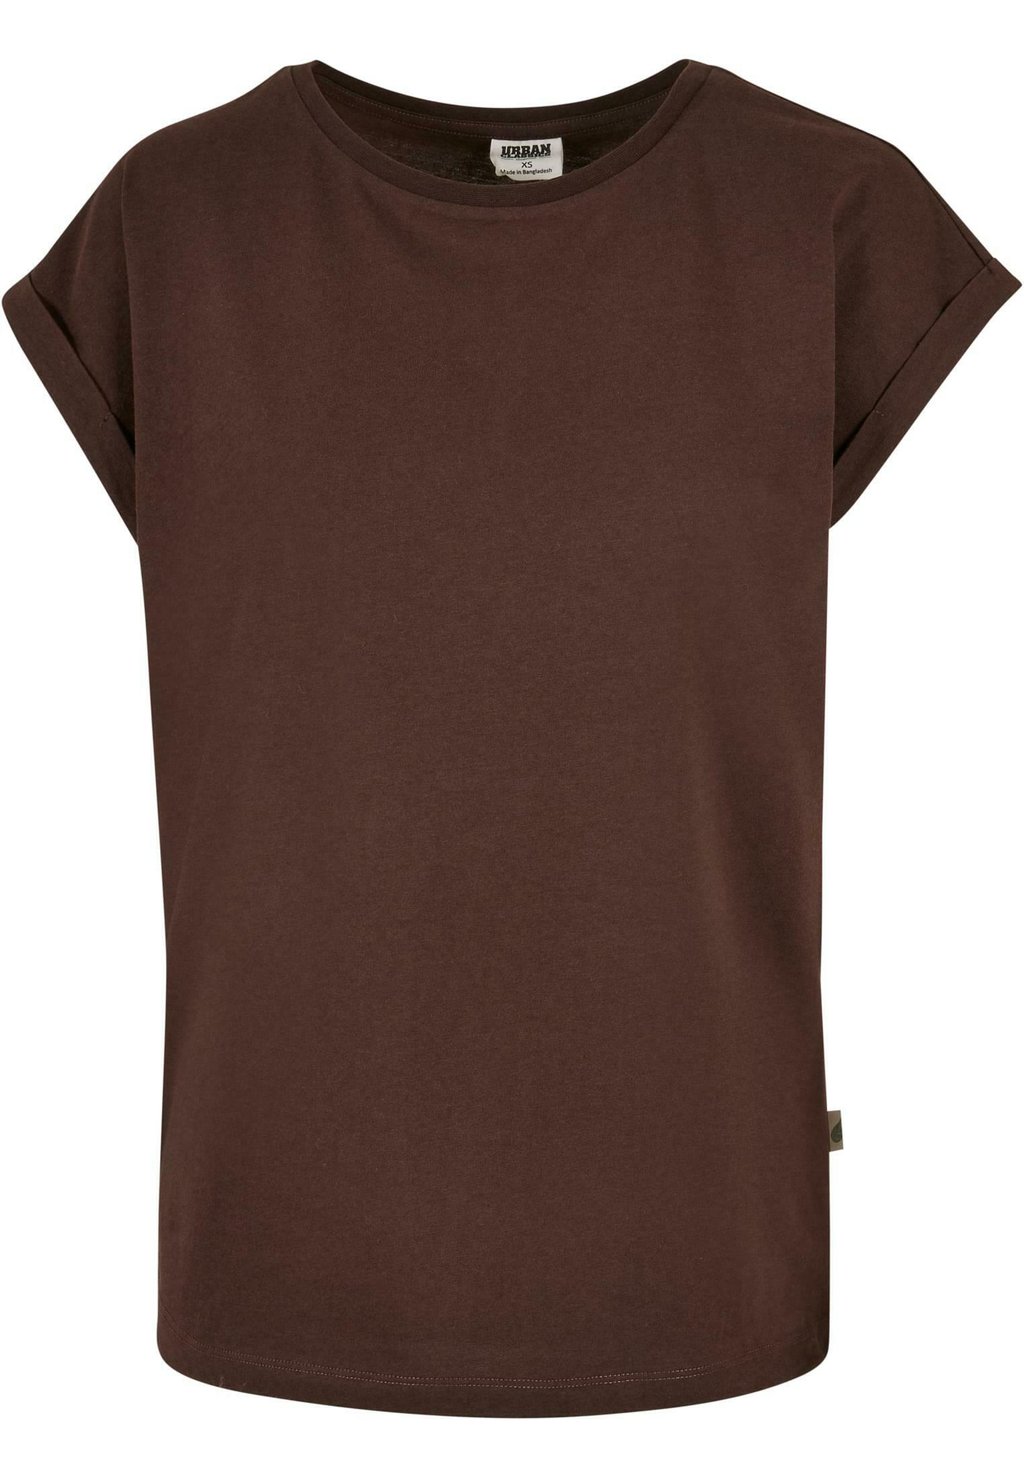 Базовая футболка Urban Classics, коричневый